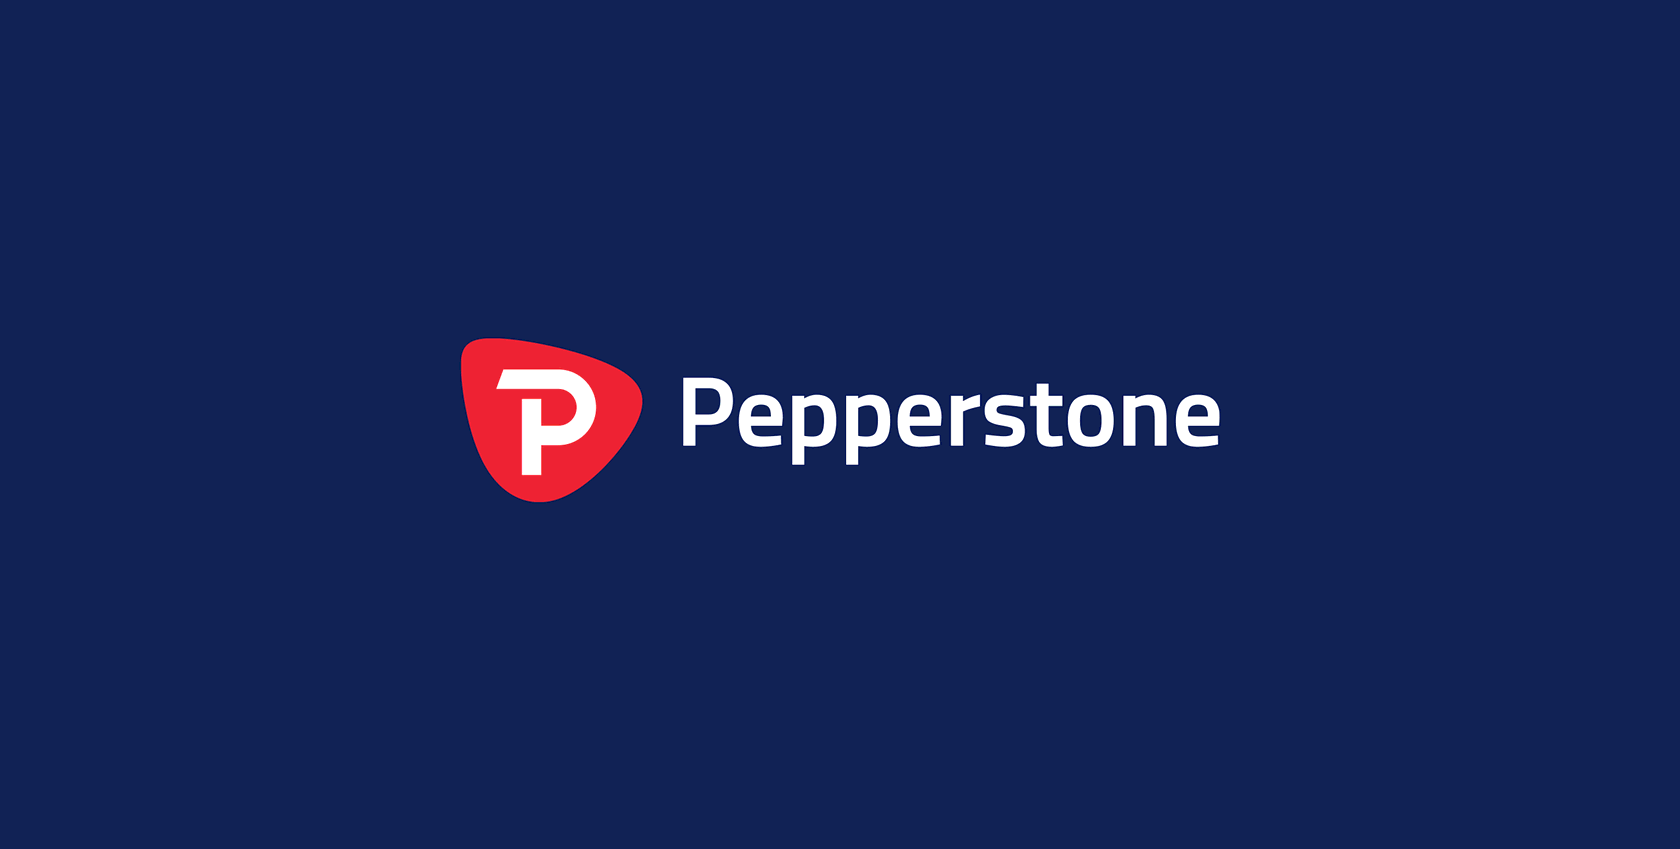 Pepperstone's minimum deposit